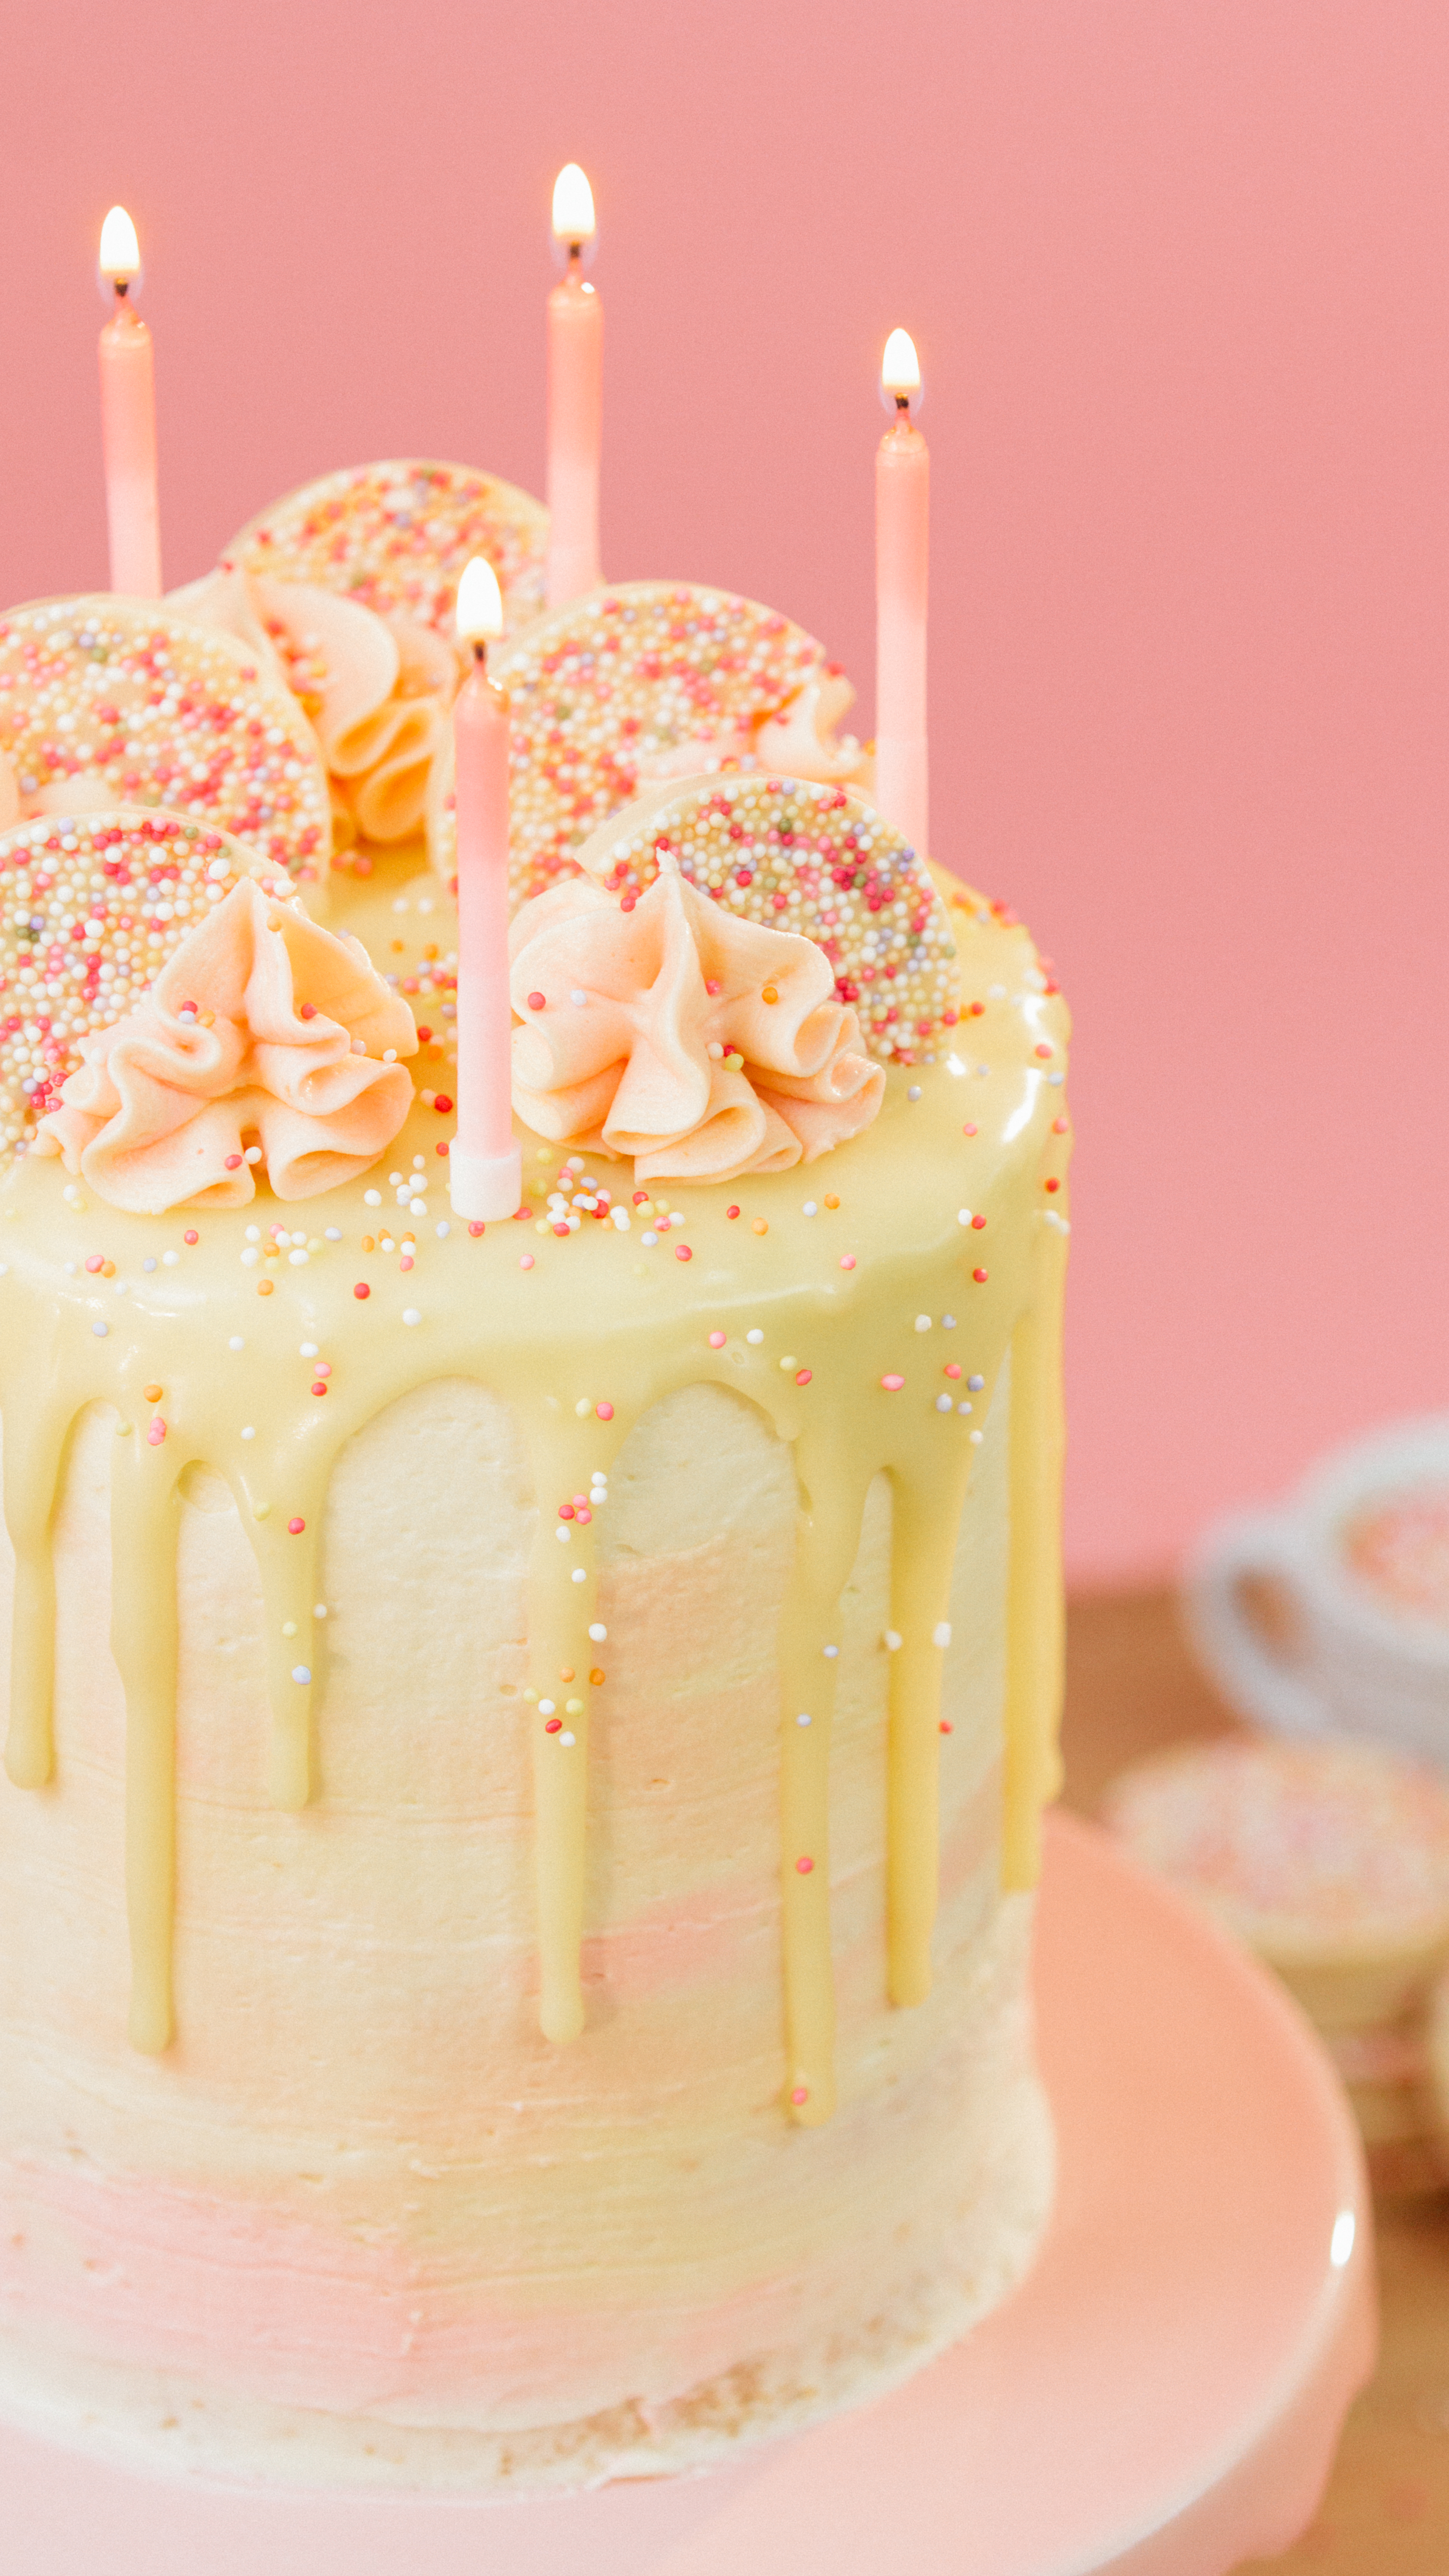 Free photo Birthday Cake Bake, Baked, Blooming Free Download Jooinn